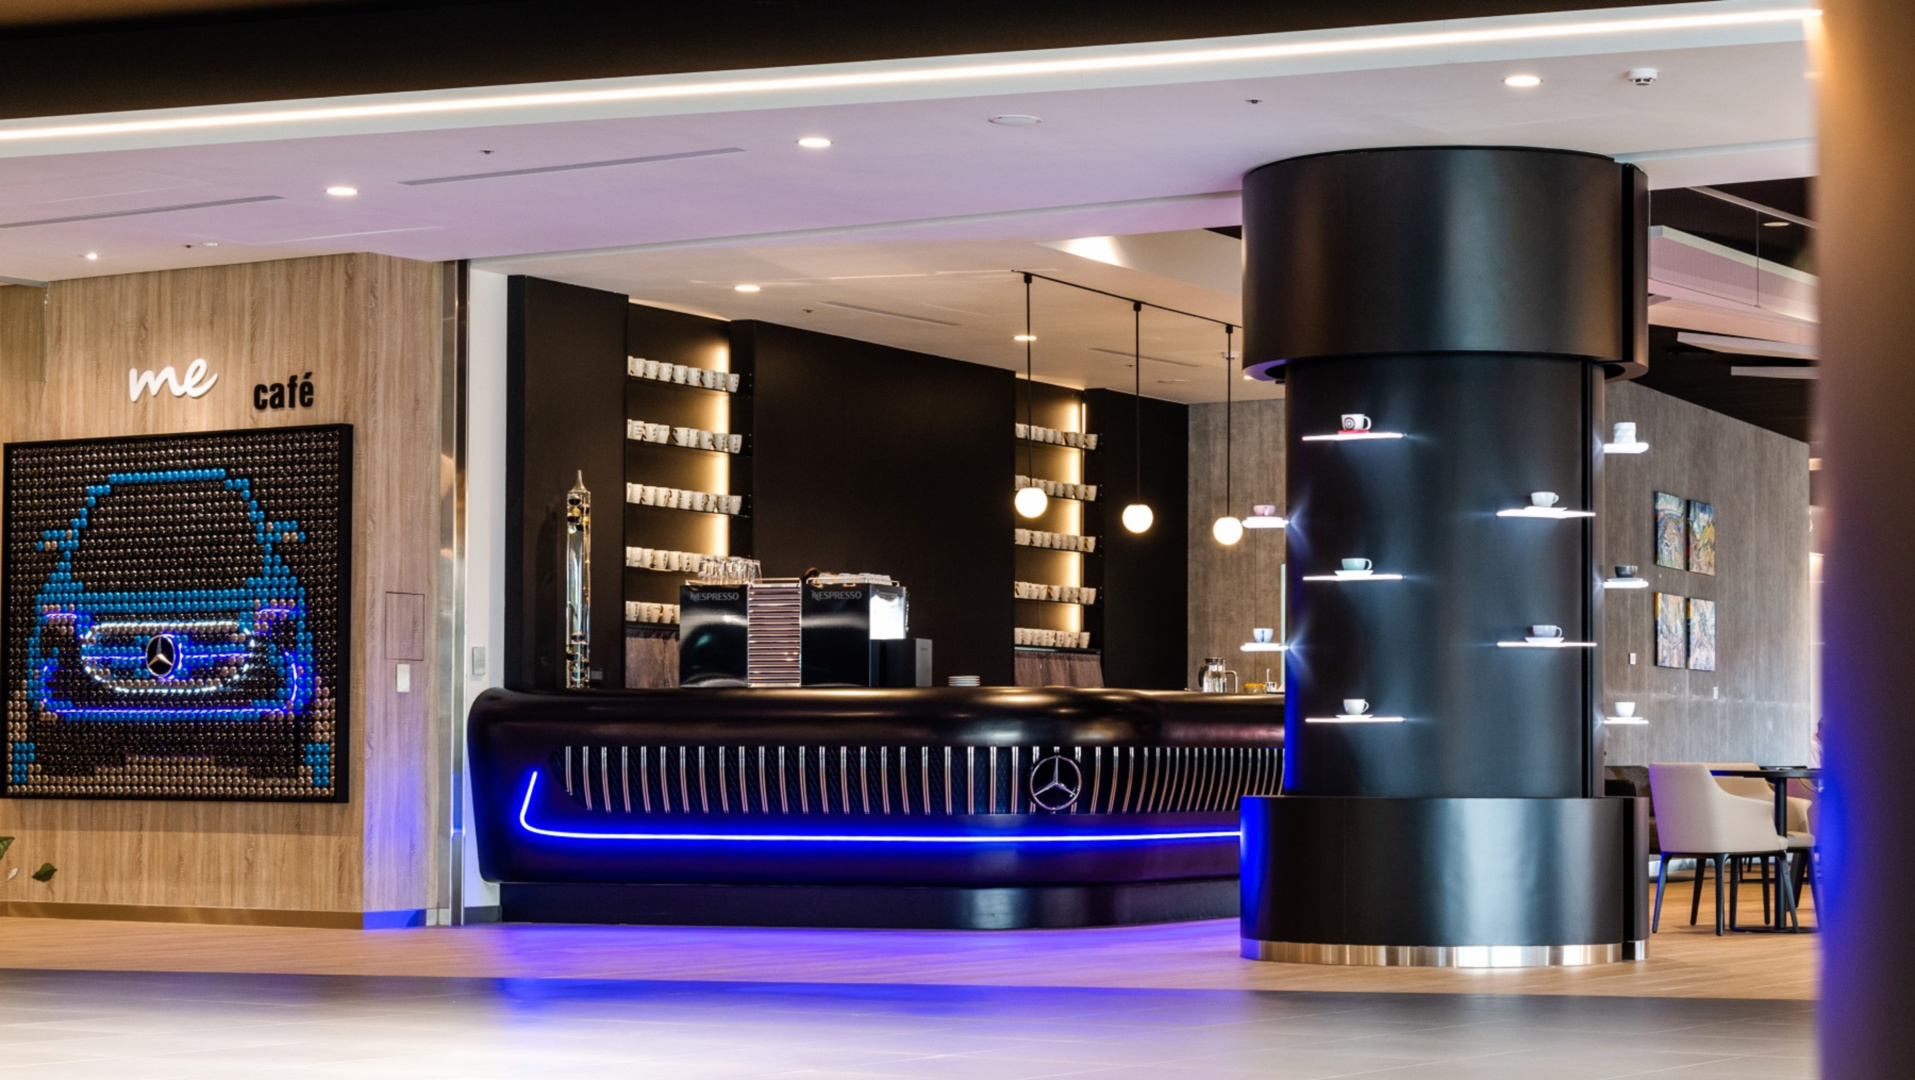 SMALL_圖3 近 290 坪的客戶休息區，提供義式咖啡機領導品牌 Nespresso 專業調製的飲品，讓車主享受彷彿居家般的舒適空間